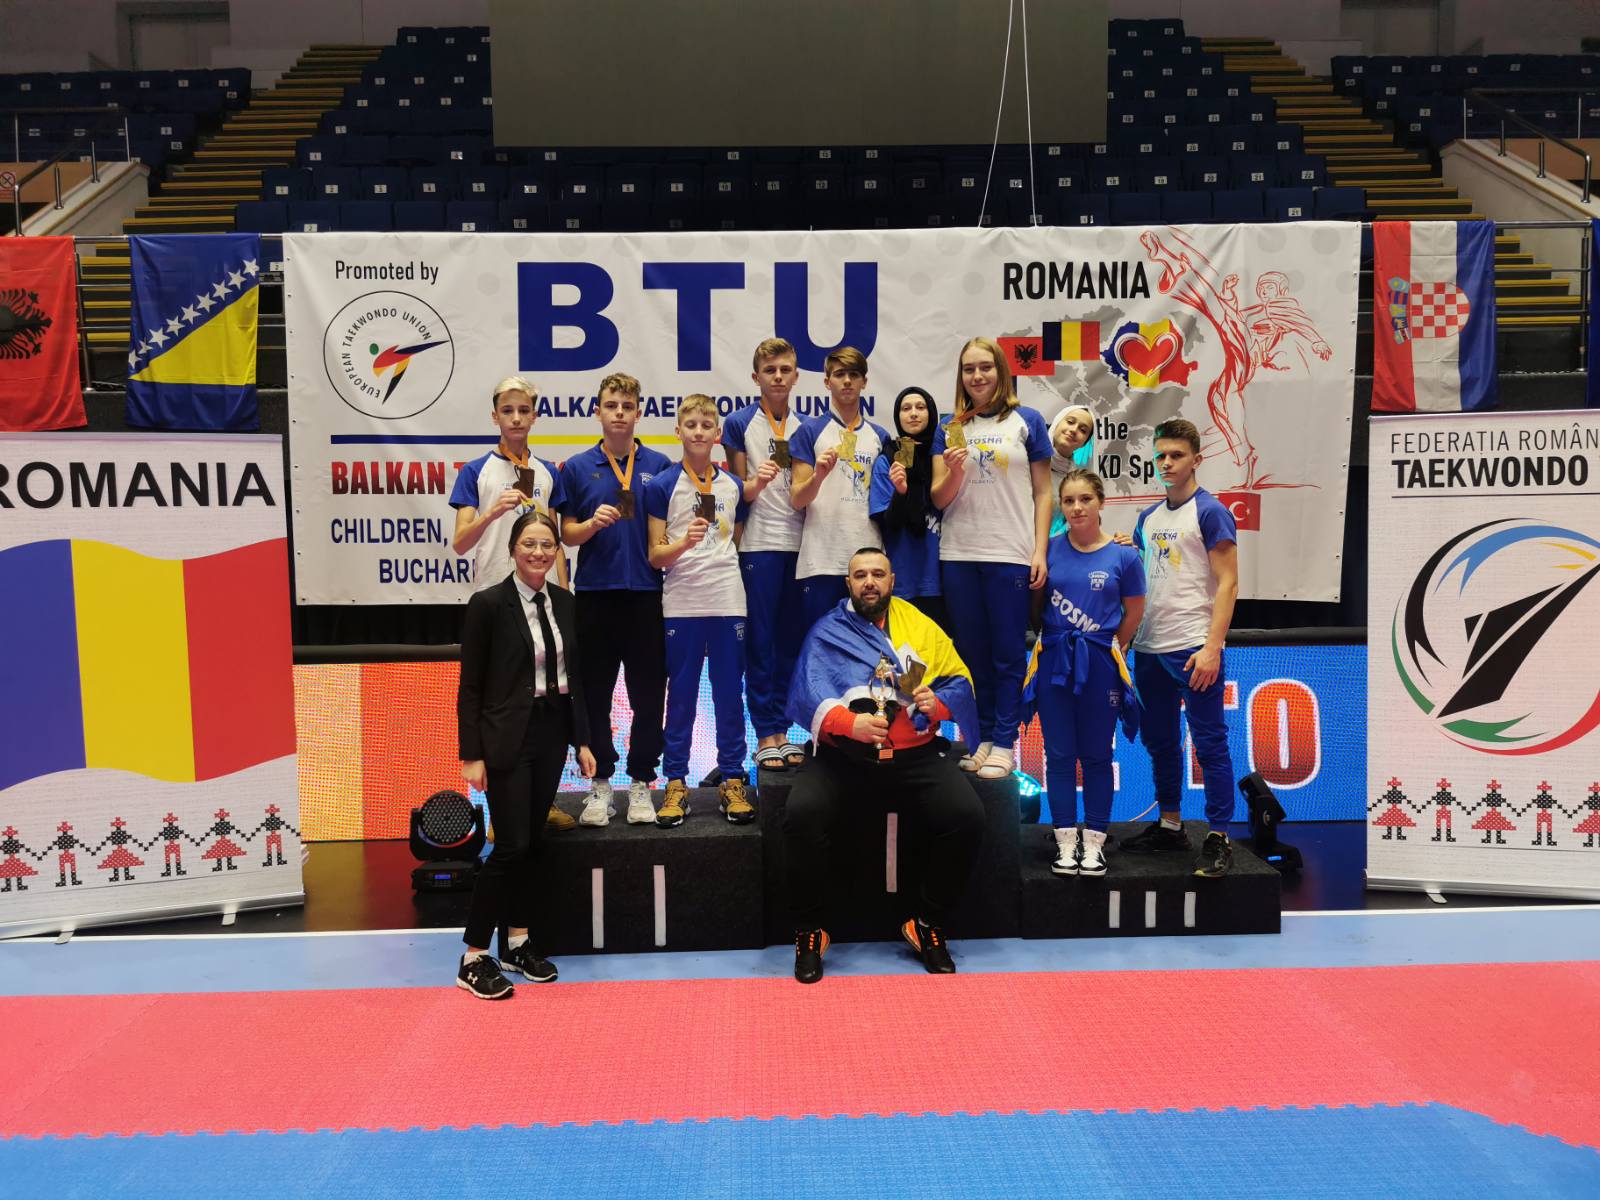 TKD Bosna iz Visokog najtrofejniji bh. klub na Balkanskom prvenstvu u Rumuniji